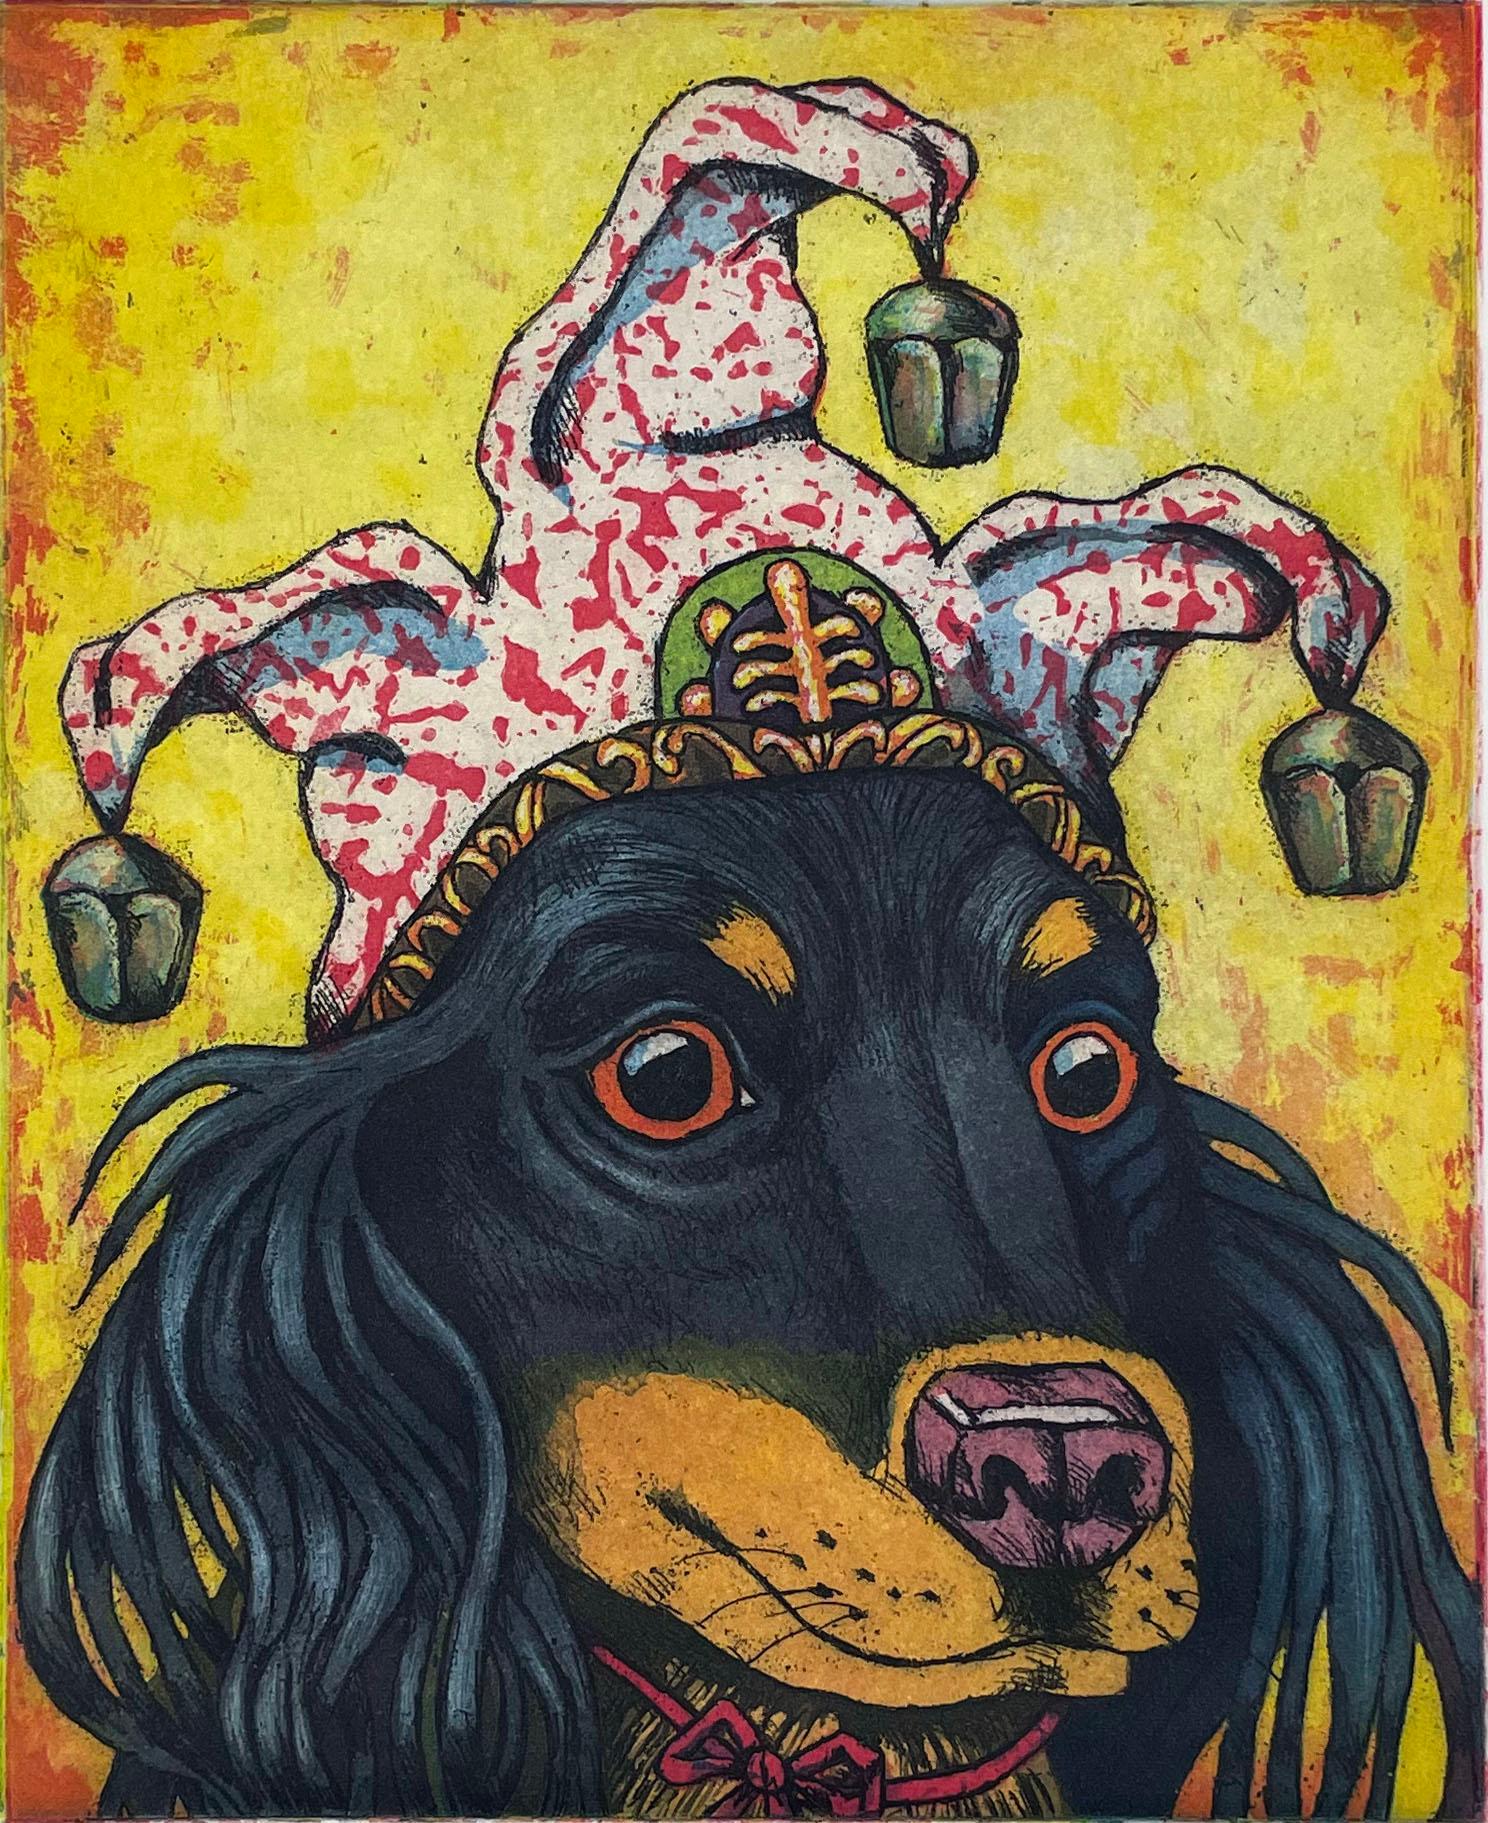 Signiert, betitelt und nummeriert vom Künstler. Der Chicano-Künstler Xavier Viramontes ist bekannt für seine politischen Themen, seine Familienszenen und den Humor, der in dieser Serie von Hundeporträts zum Ausdruck kommt.

In den 1970er Jahren